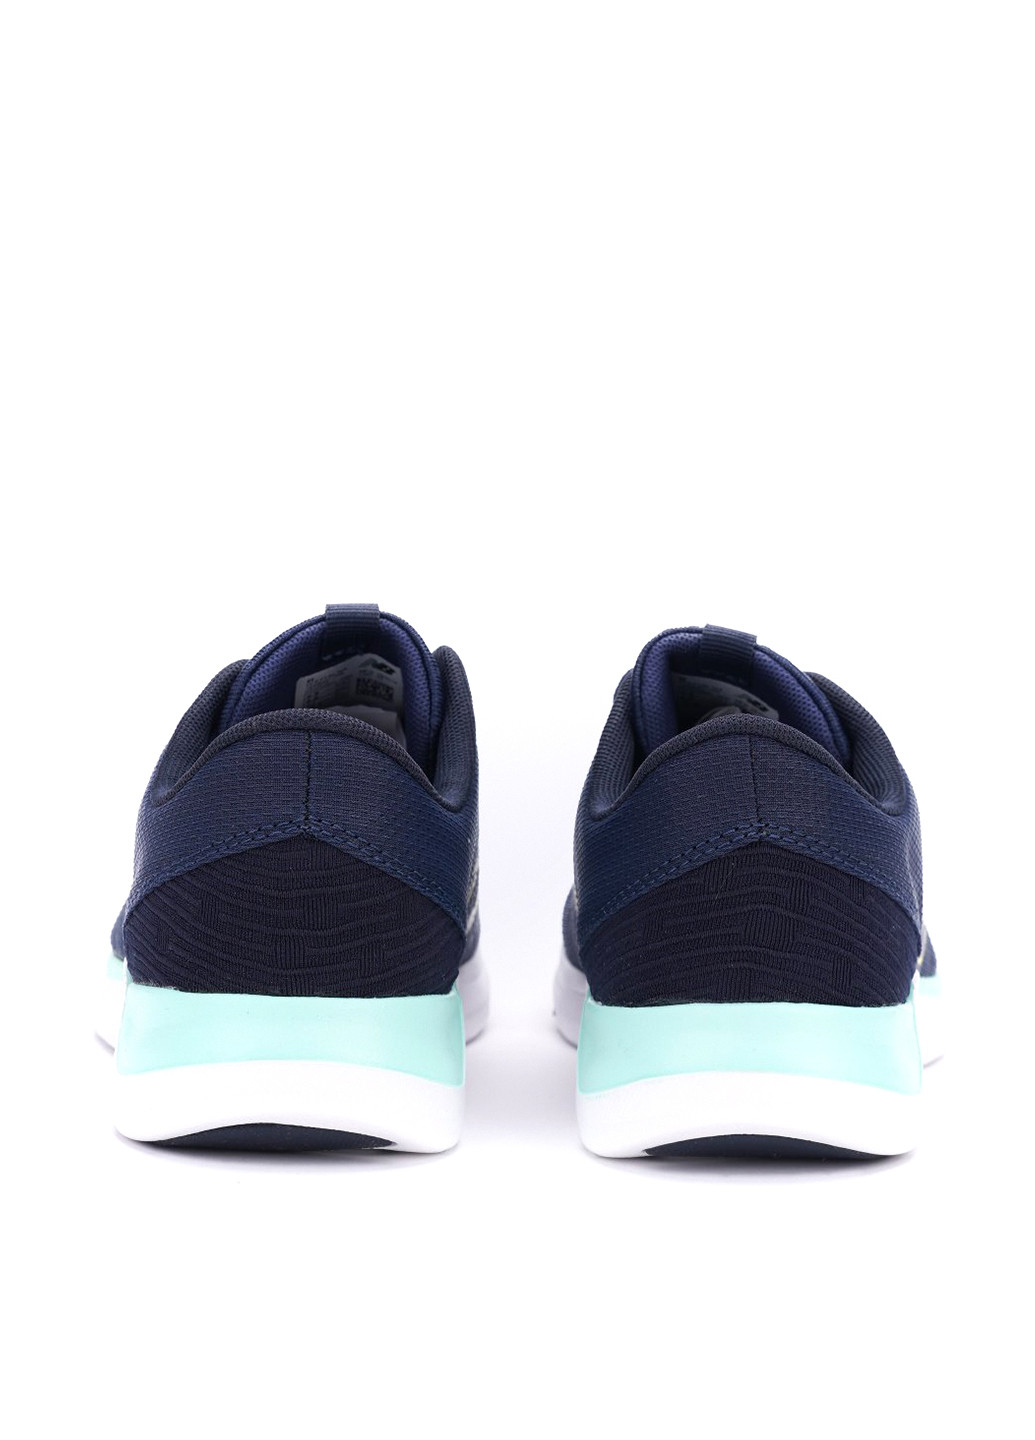 Синие всесезонные кроссовки New Balance 715